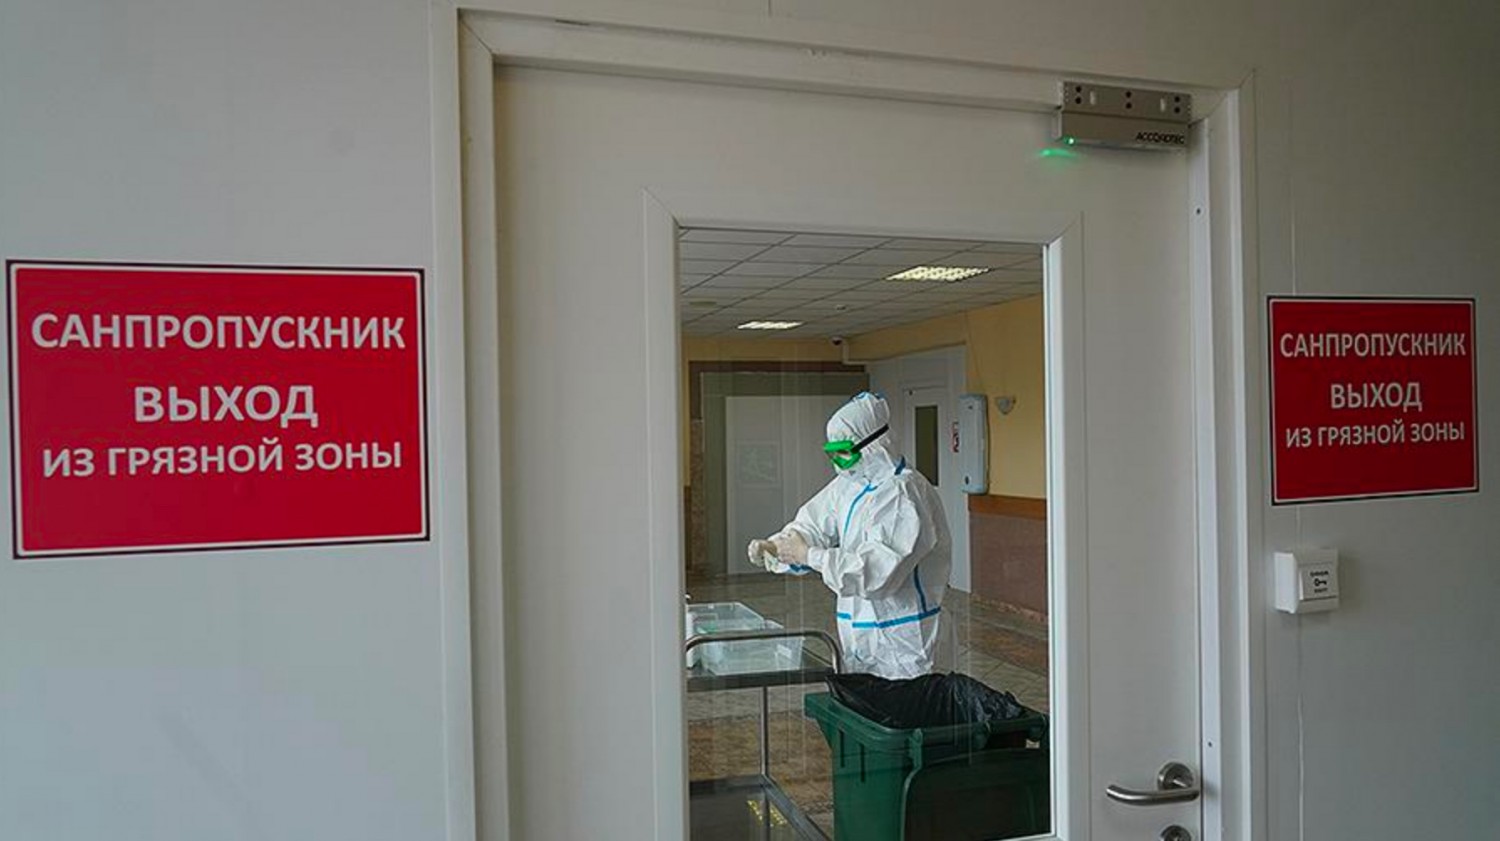 Сводка заболеваний коронавирусом по Рыбновскому району на 21 апреля